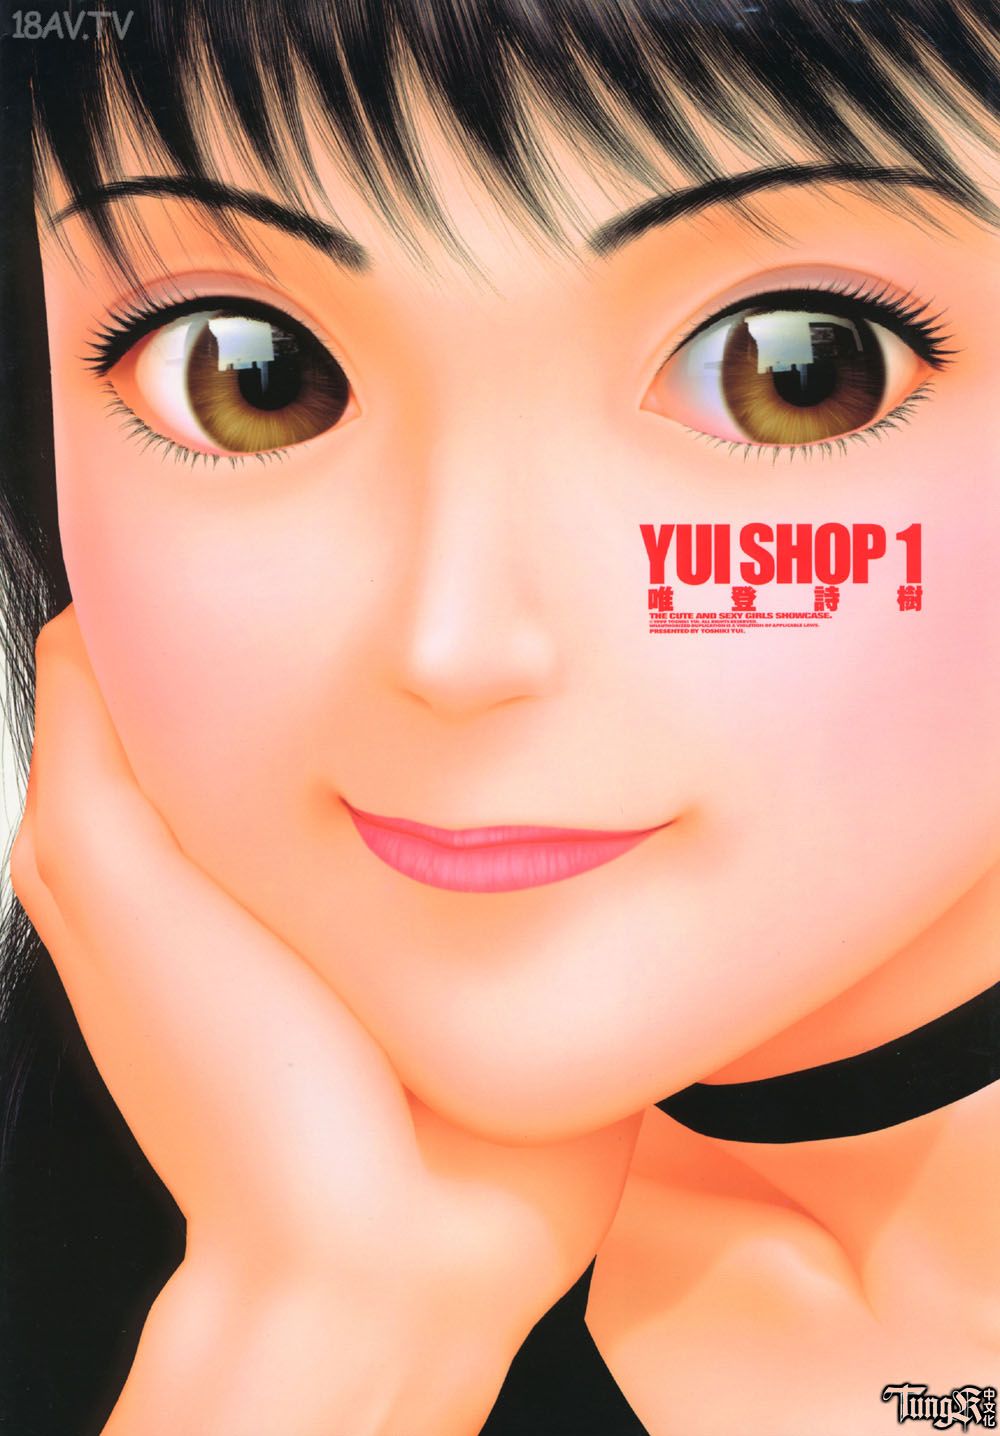 [在线本子(Full)][唯登诗树]Yui Shop Vol.1-4 [368p]在线观看